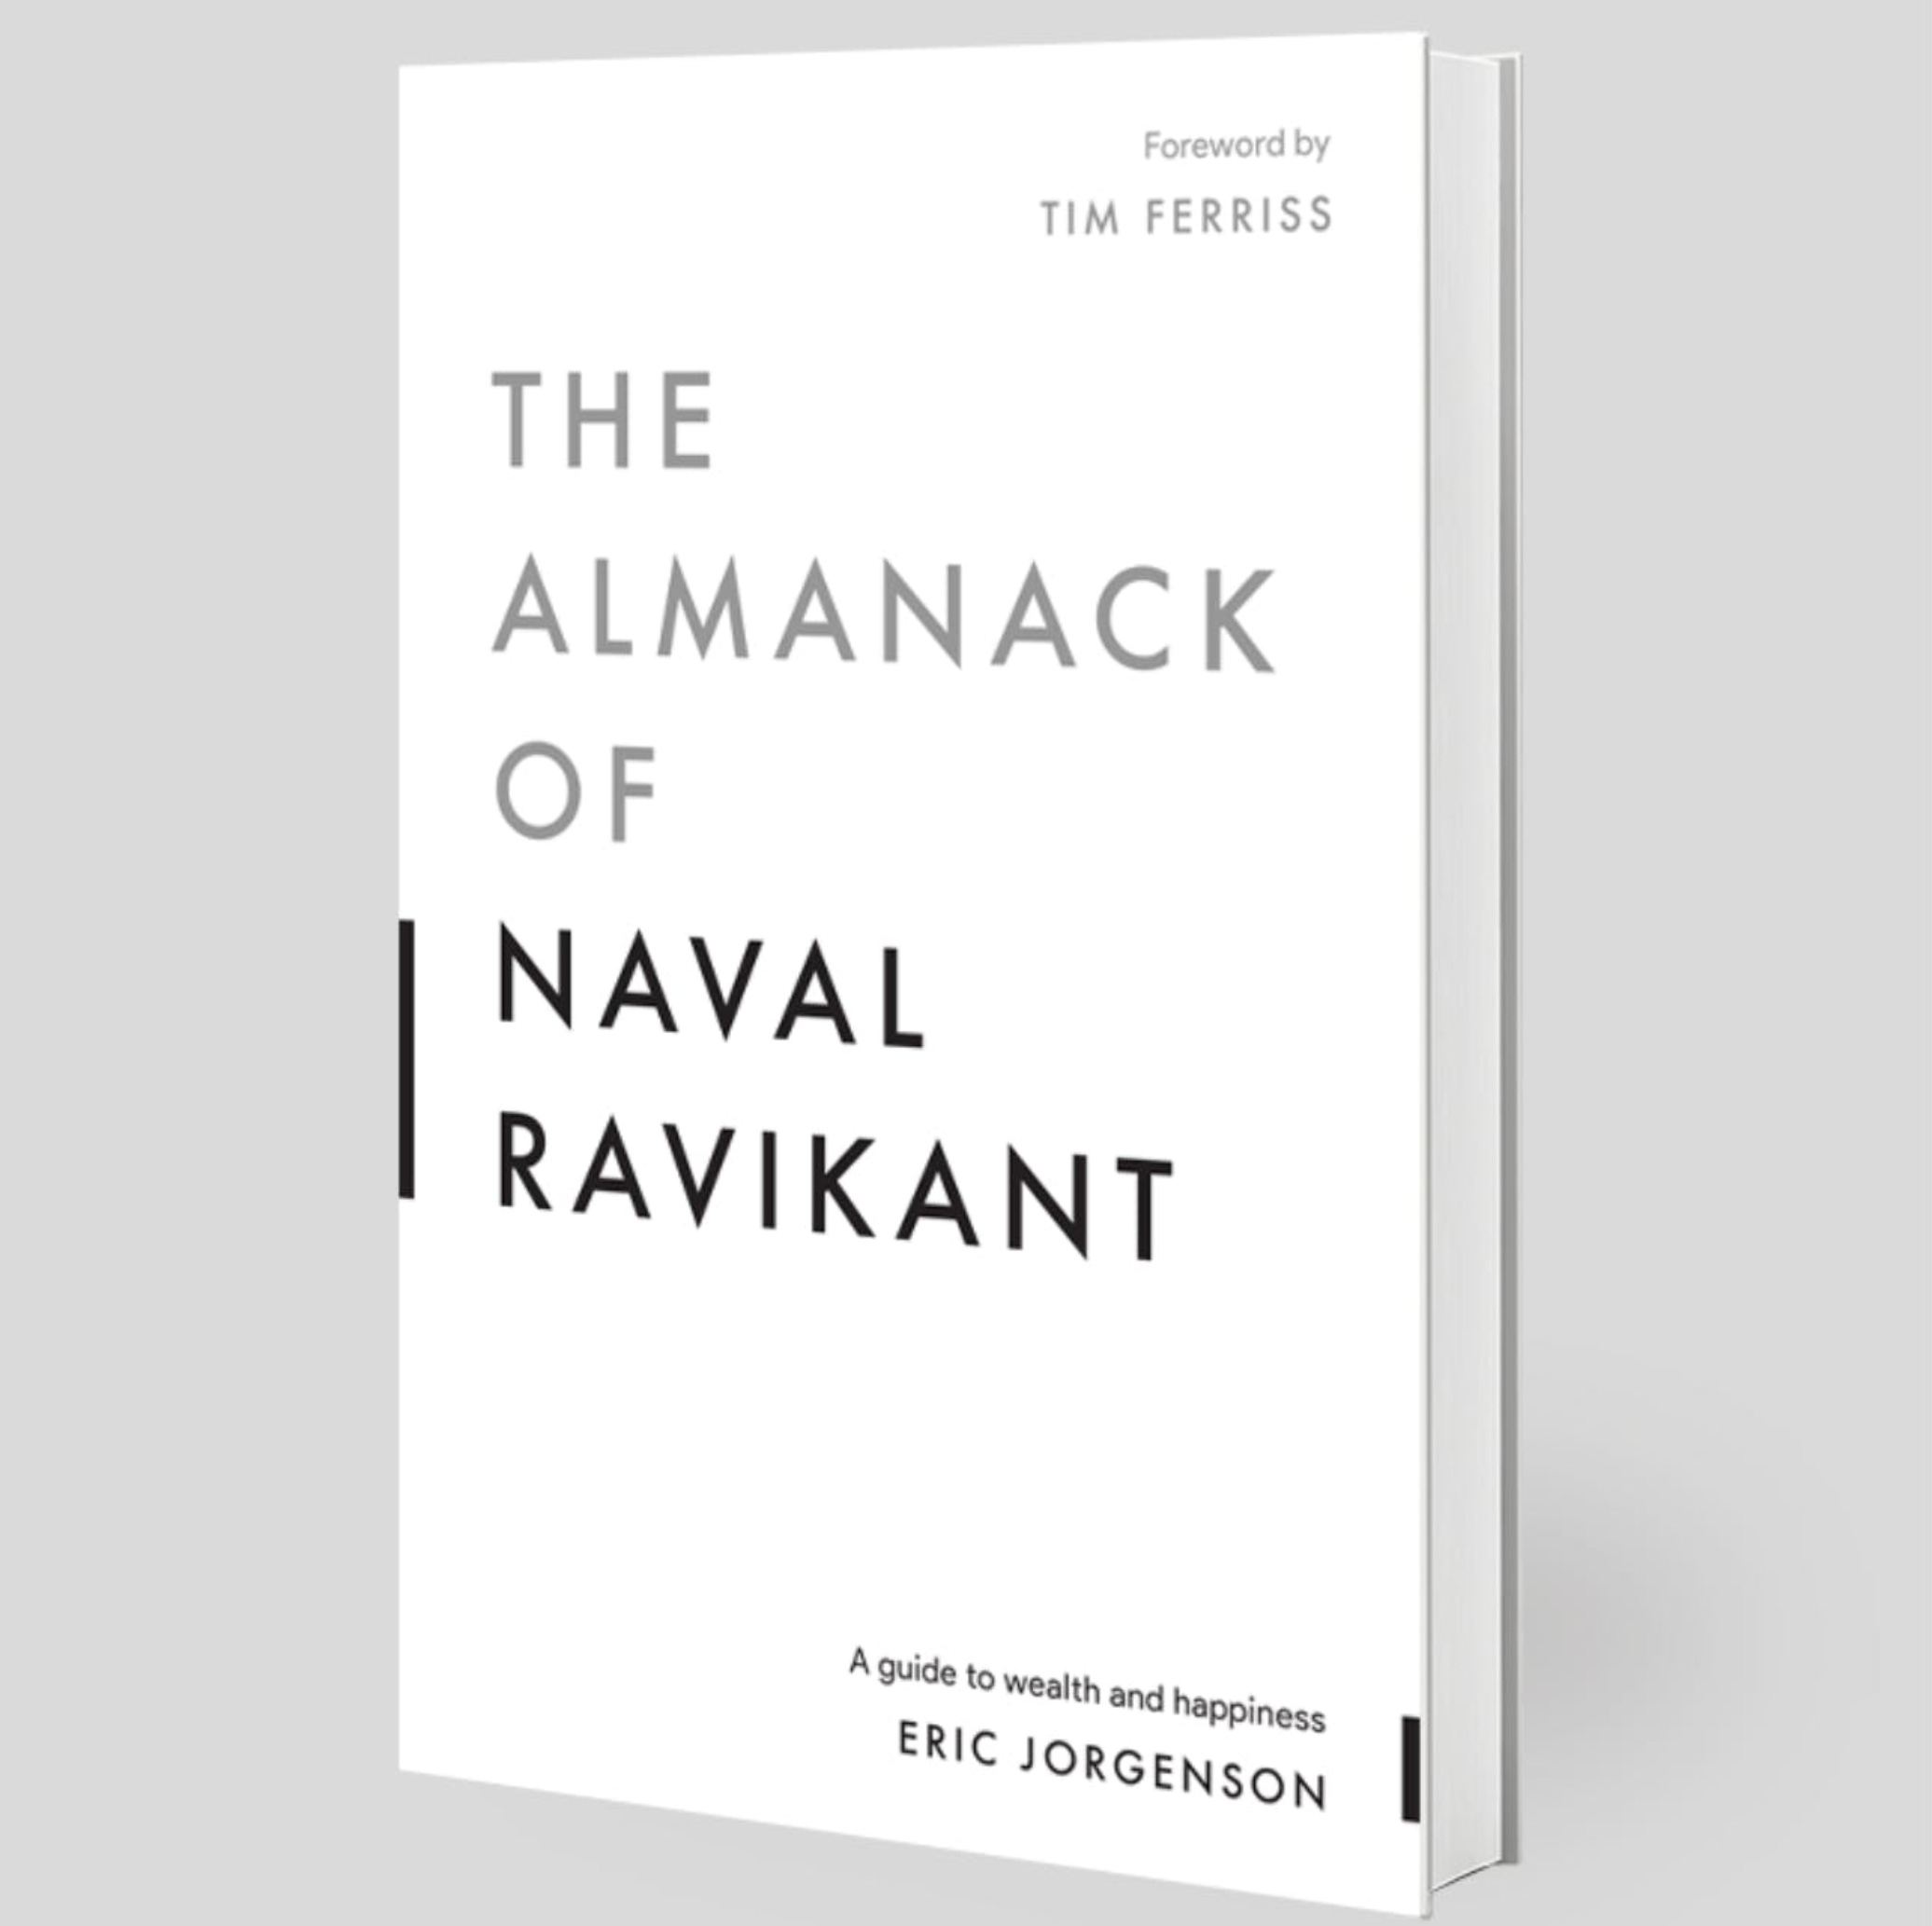 THE ALMANACK OF NAVAL RAVIKANT